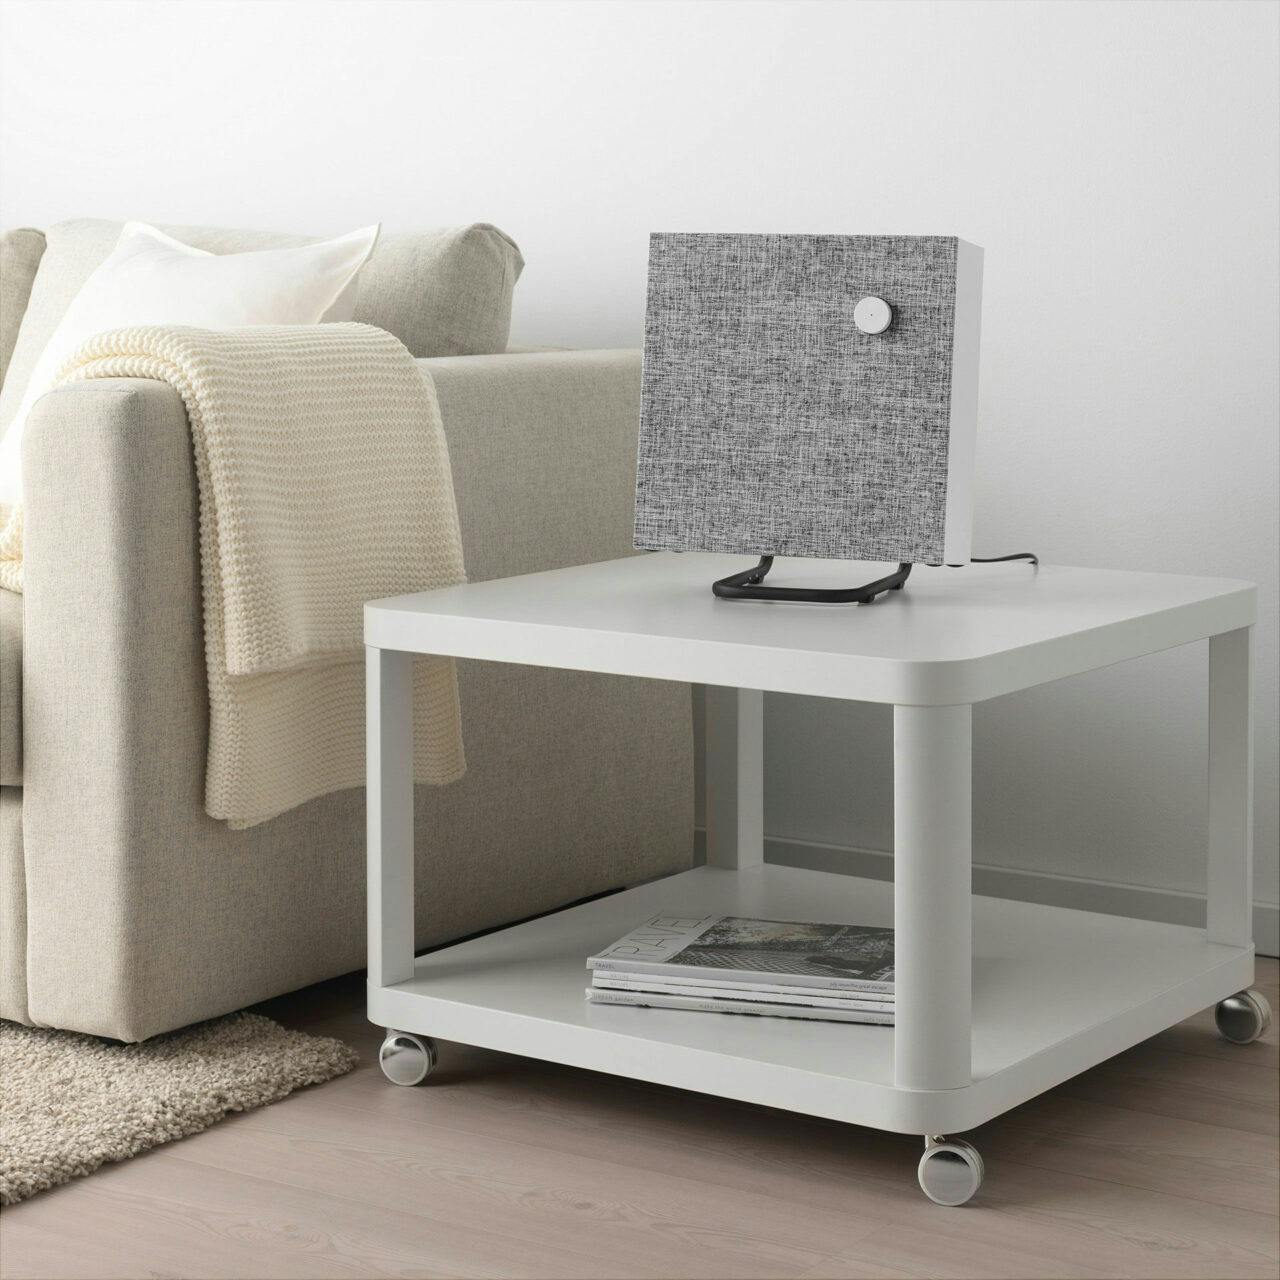 IKEA Eneby – Möbelhaus stellt neuen Lautsprecher vor